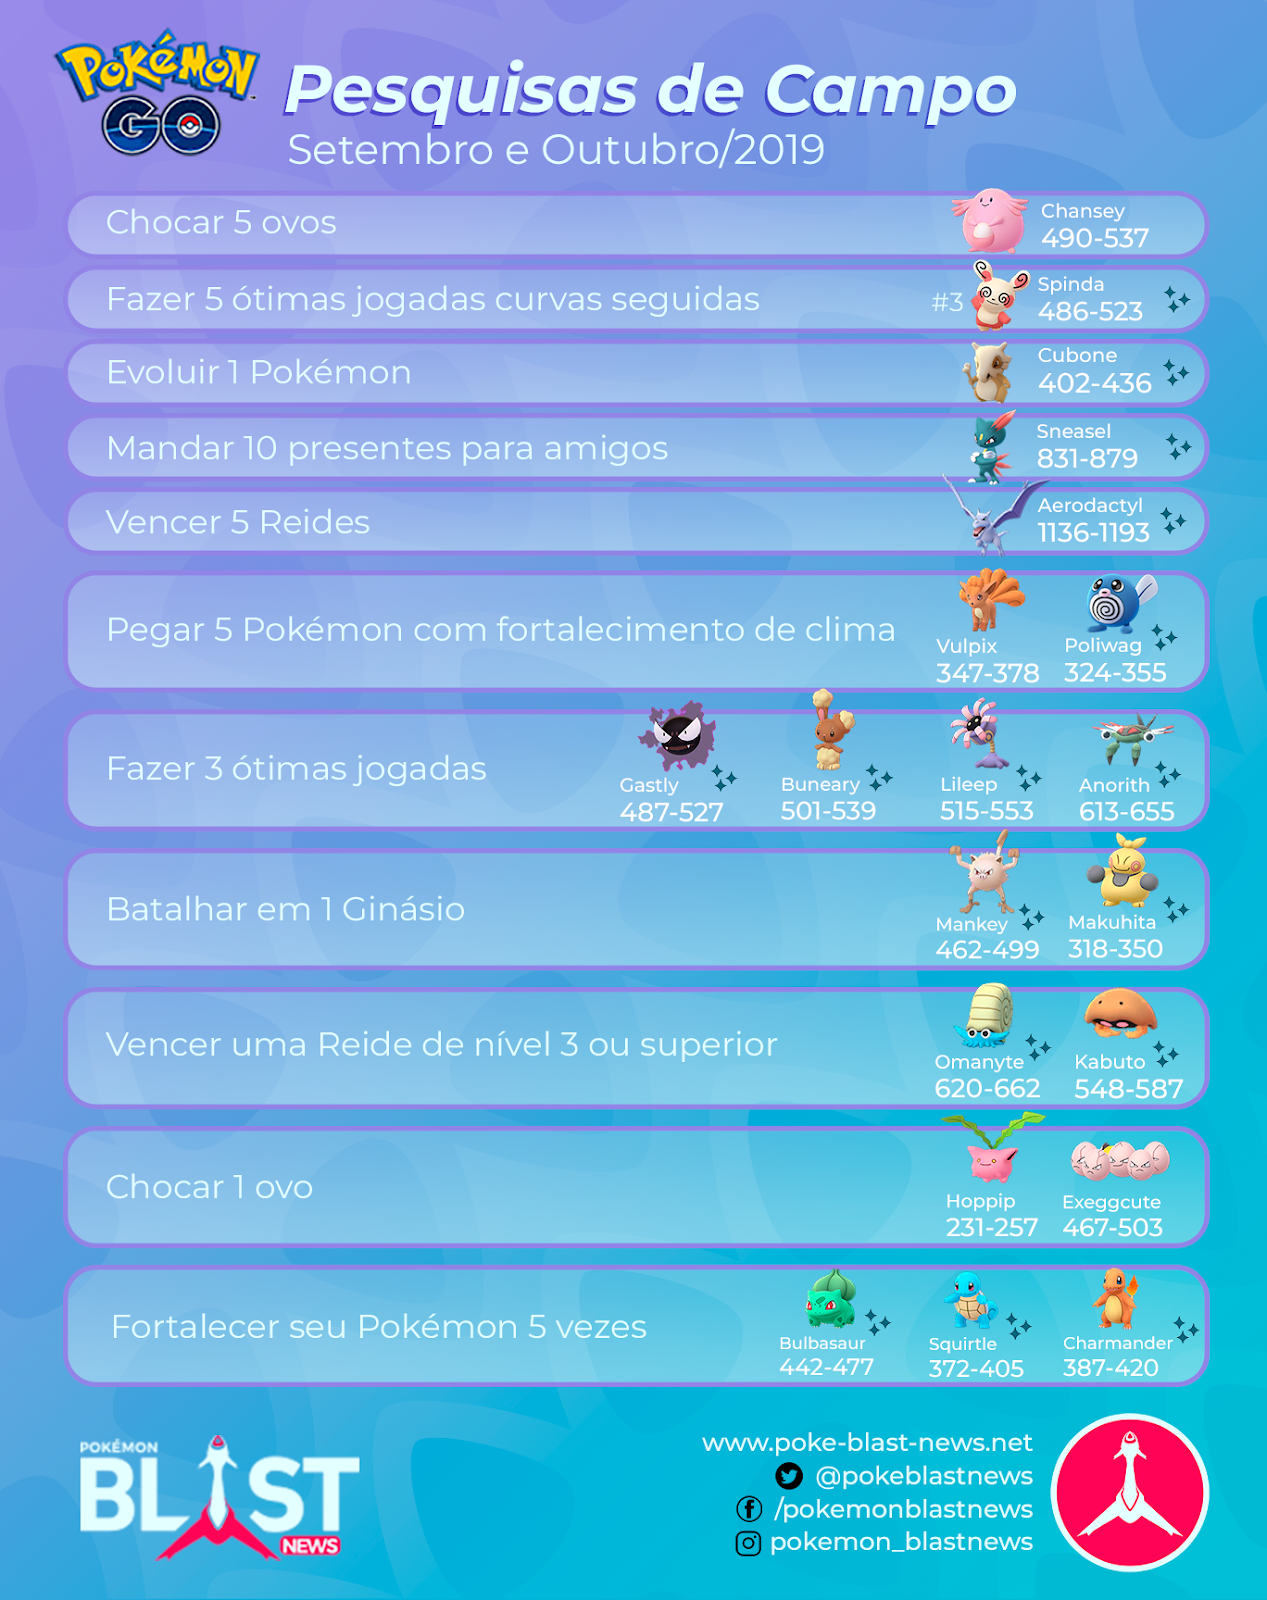 Jogada Excelente on X: Pokémon GO: Pesquisas de Campo disponíveis